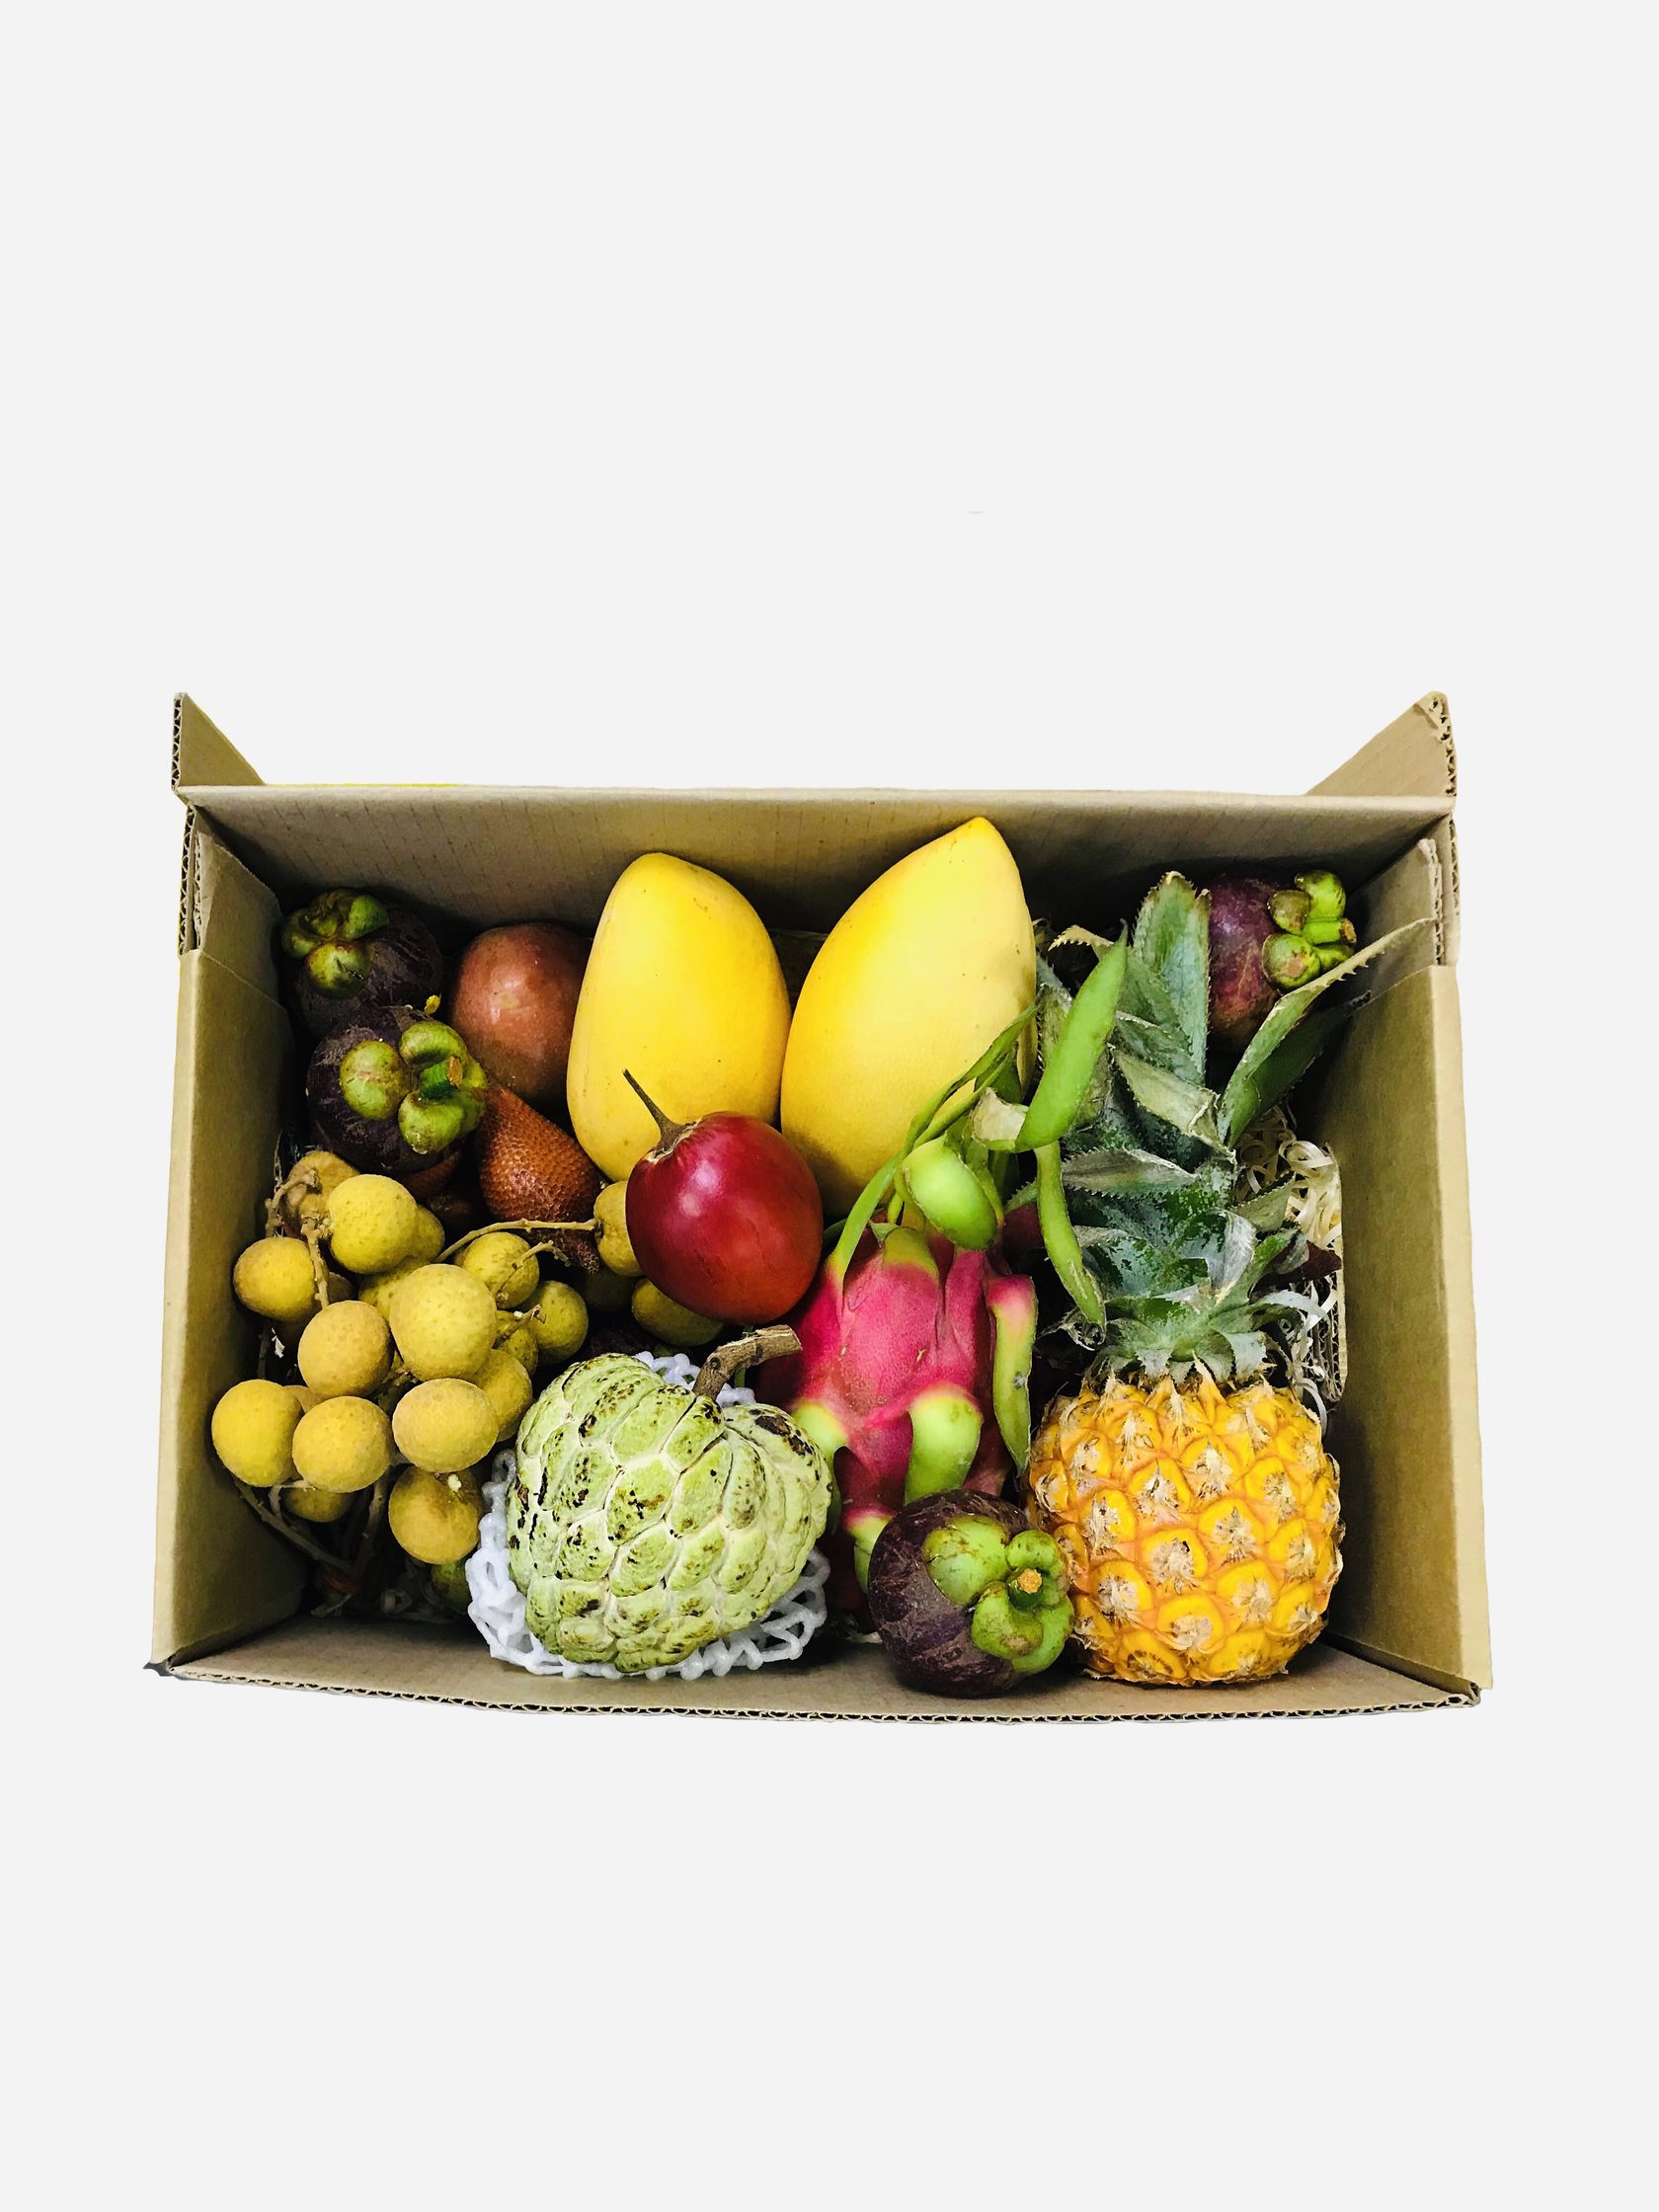 Фруктовые подарки москва. Коробка экзотических фруктов. Экзотические фрукты в коробке. Подарочная коробка с фруктами. Набор из фруктов.